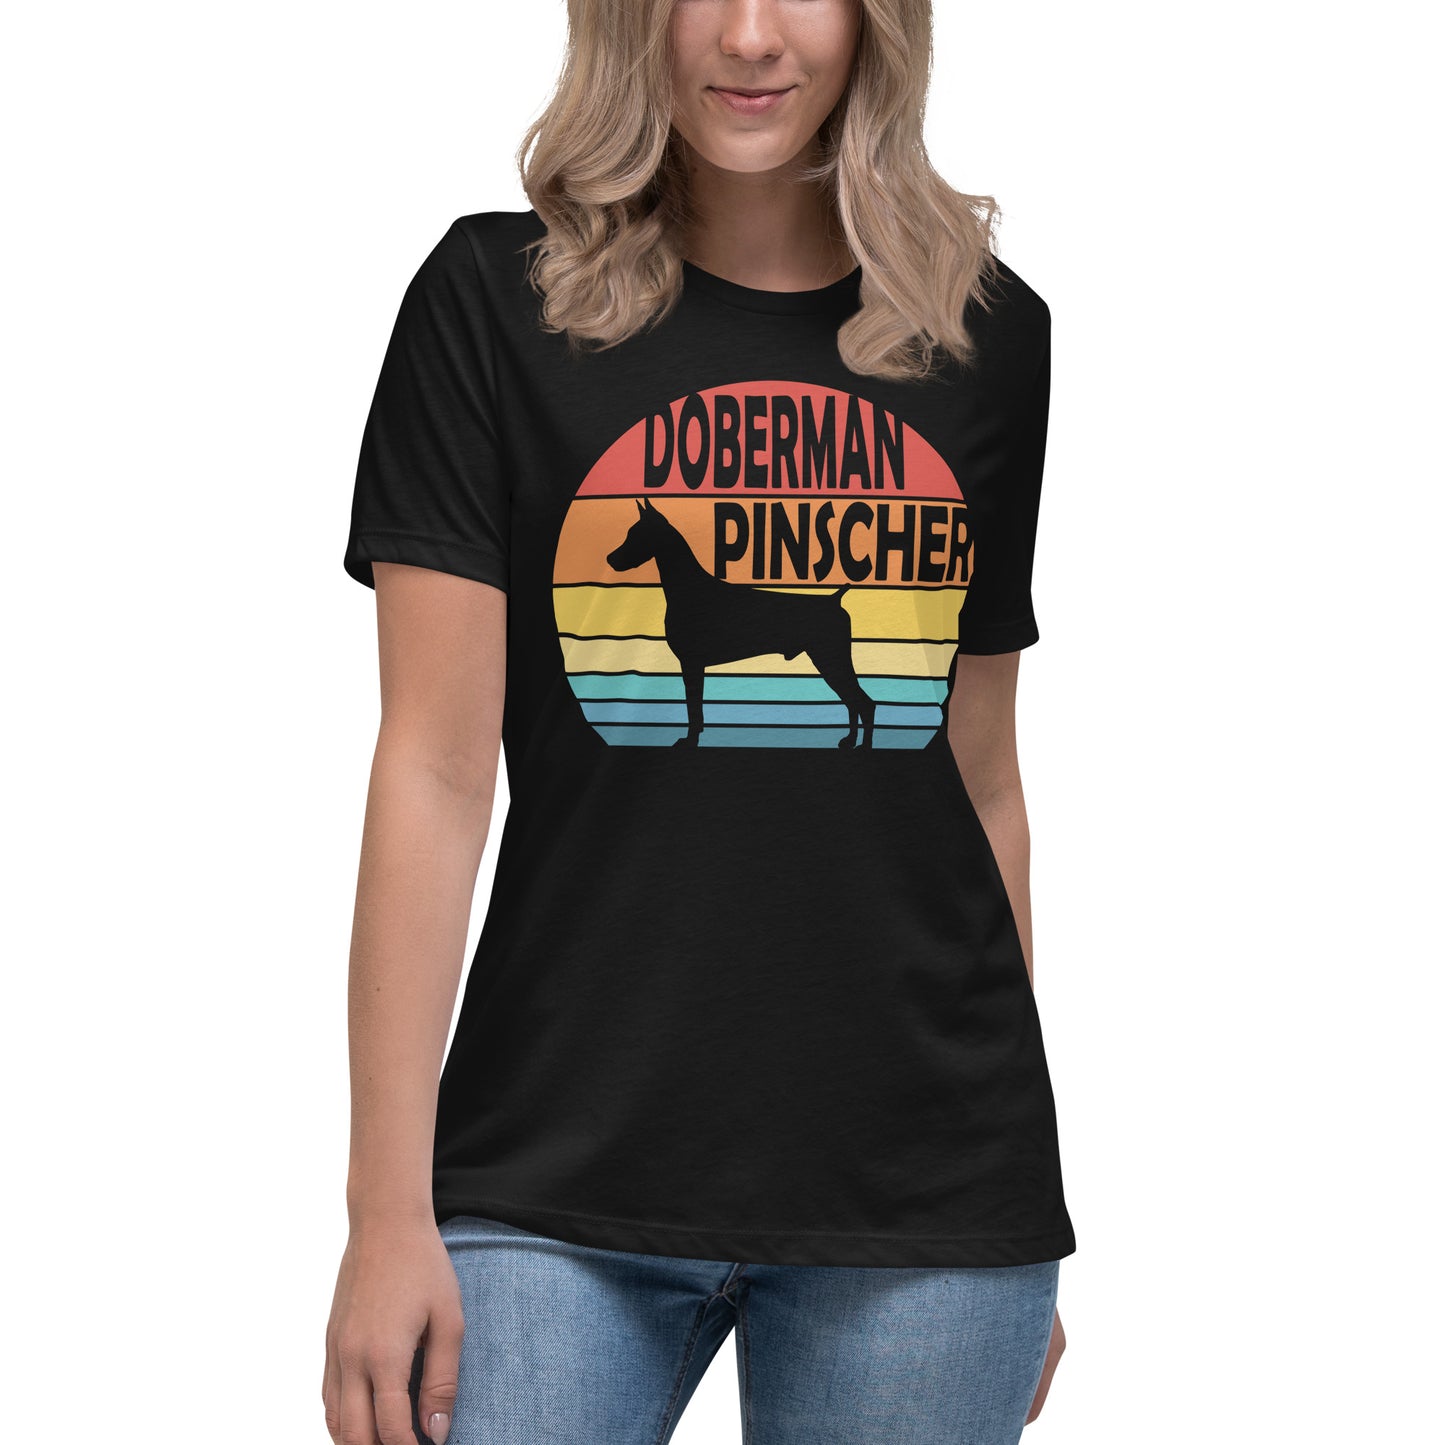 Sunset Doberman Pinscher Women's Relaxed T-Shirt